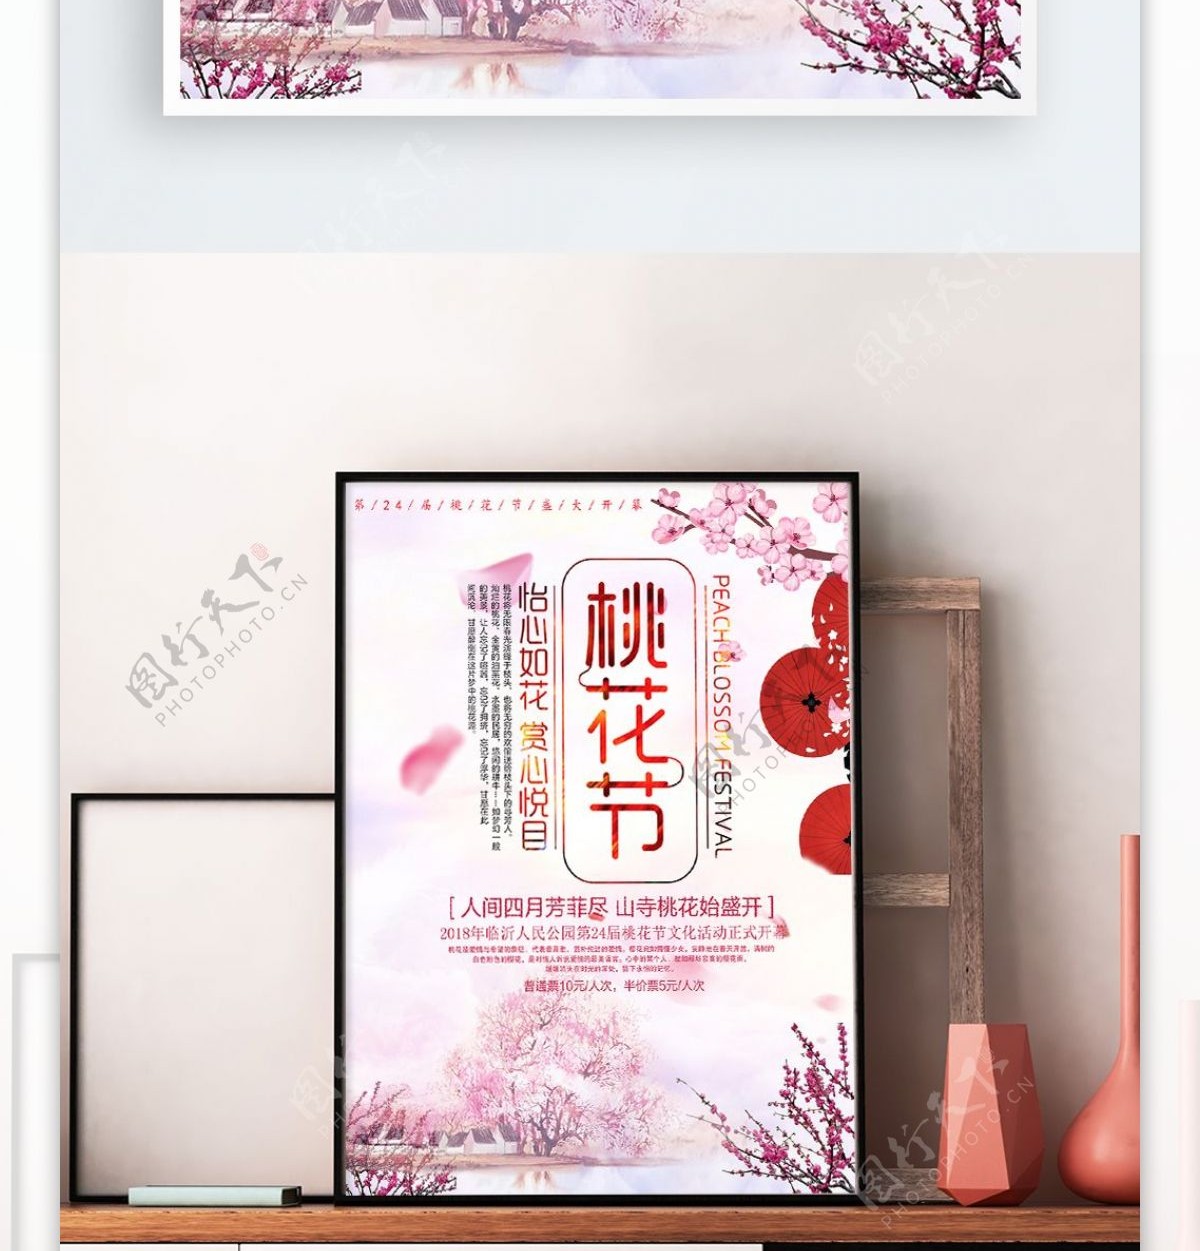 粉色系桃花节宣传海报